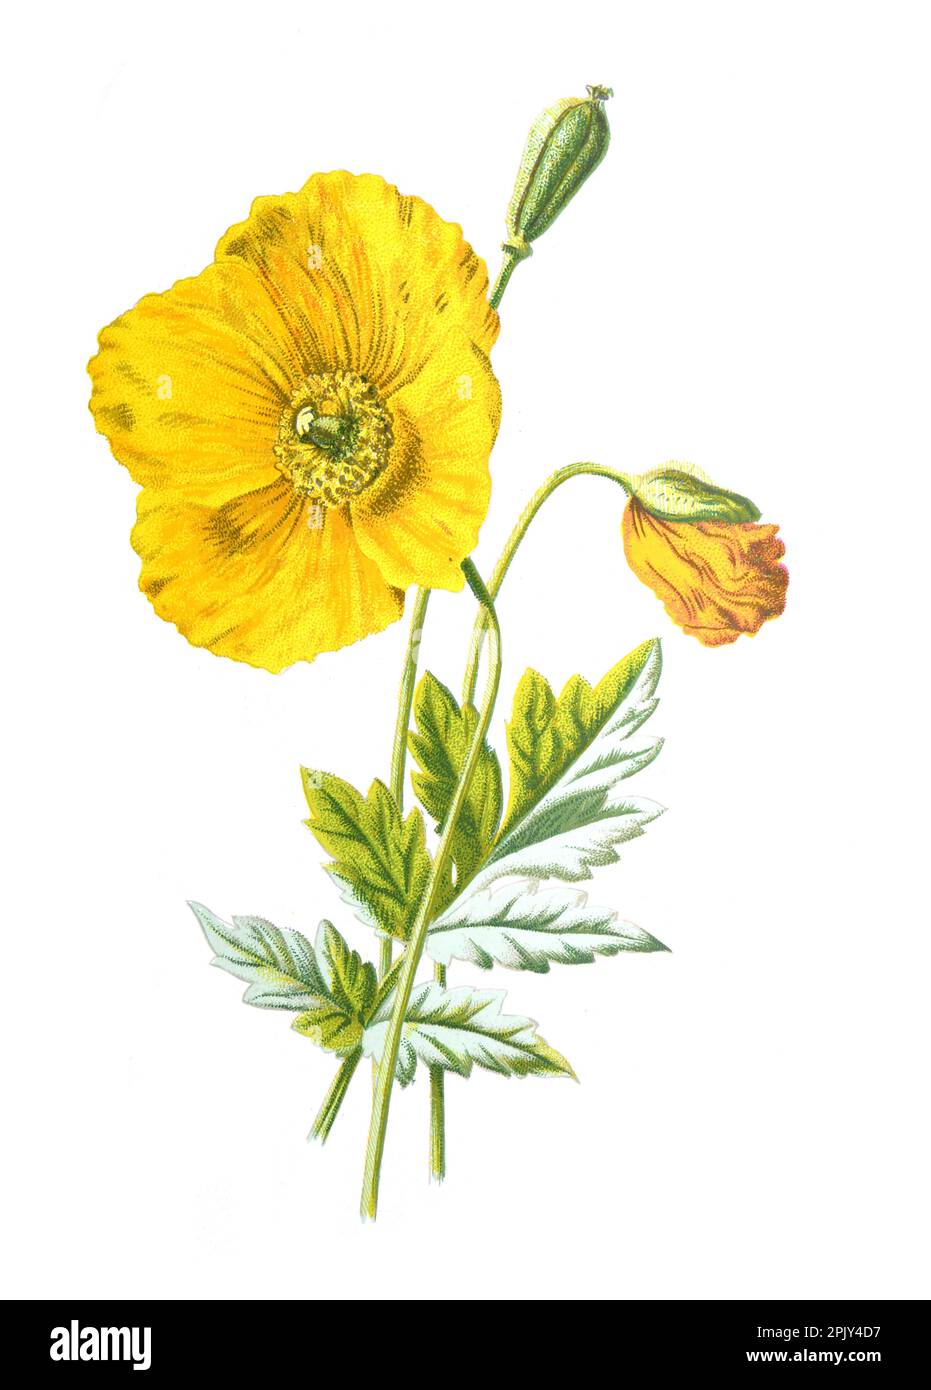 Bergmohn oder Windblume. Vintage Hand gezeichnet Wildfeld gelbe Mohnblume Illustration. Botanisches Poster mit wilden Windblumen. Biodiversität. Stockfoto